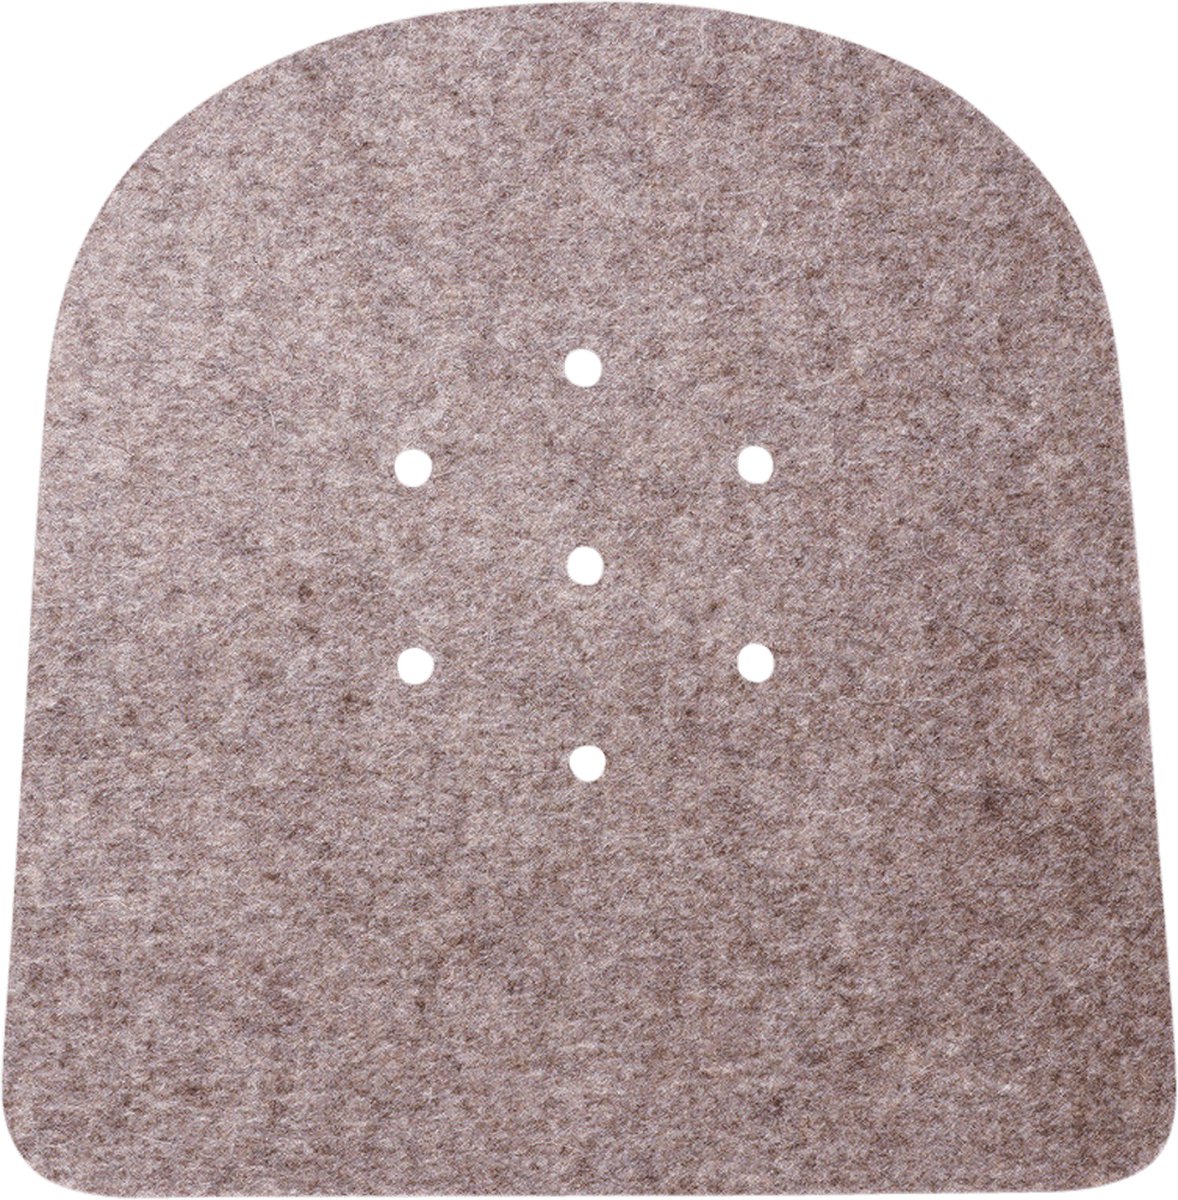 5 mm gaatjes (anti-slip) seatpad voor Tolix stoel | Lichtbruin 09